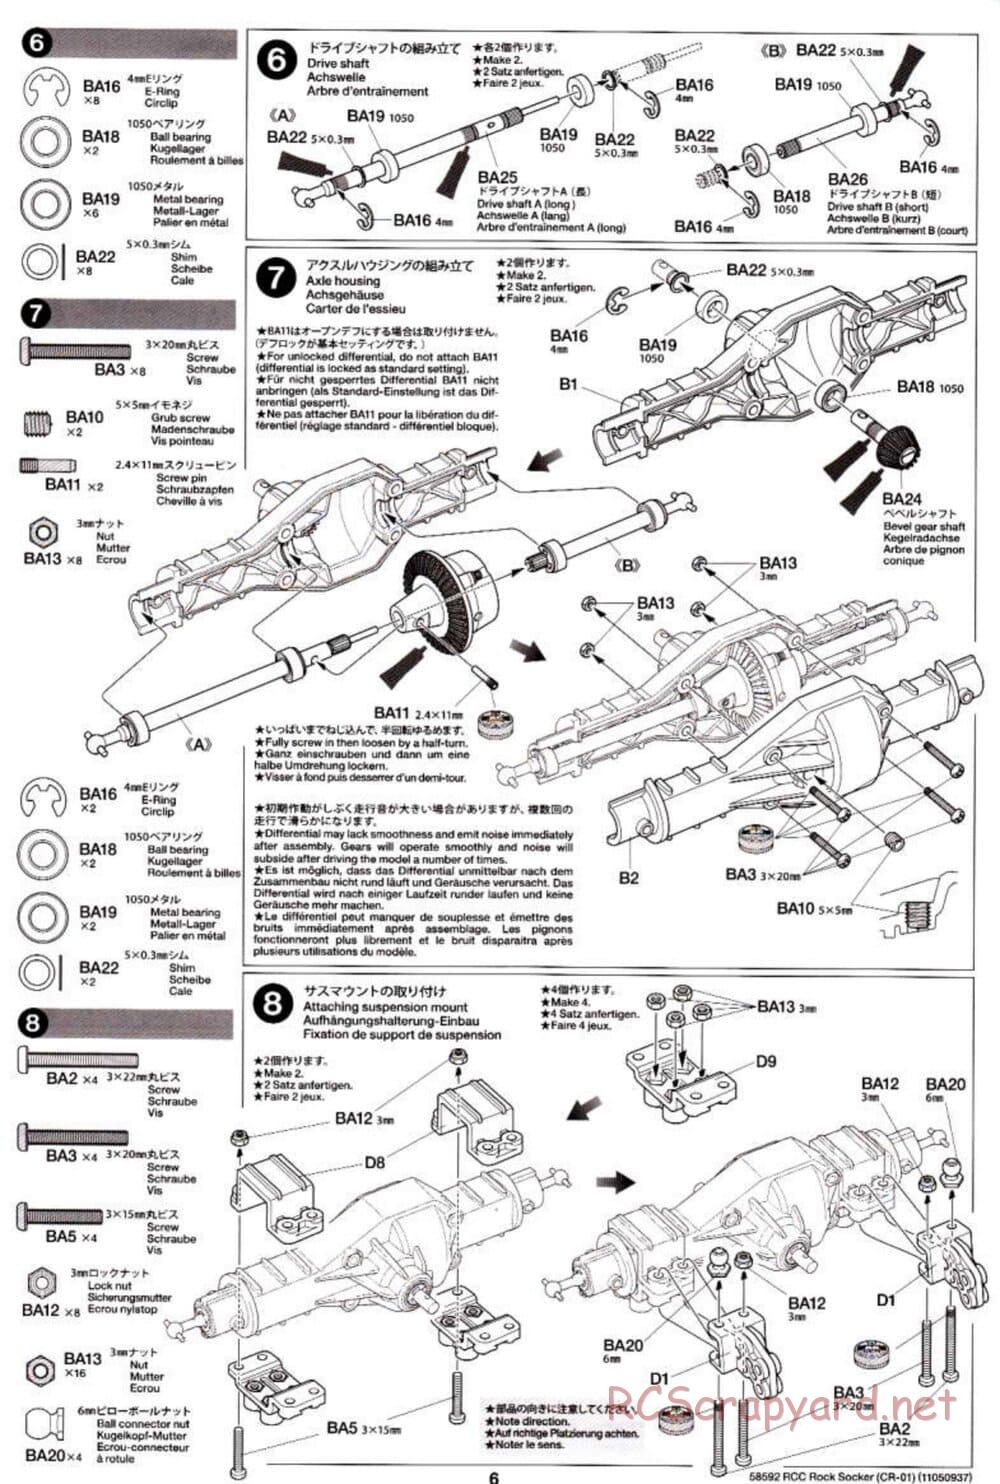 Tamiya - Rock Socker - CR-01 Chassis - Manual - Page 6